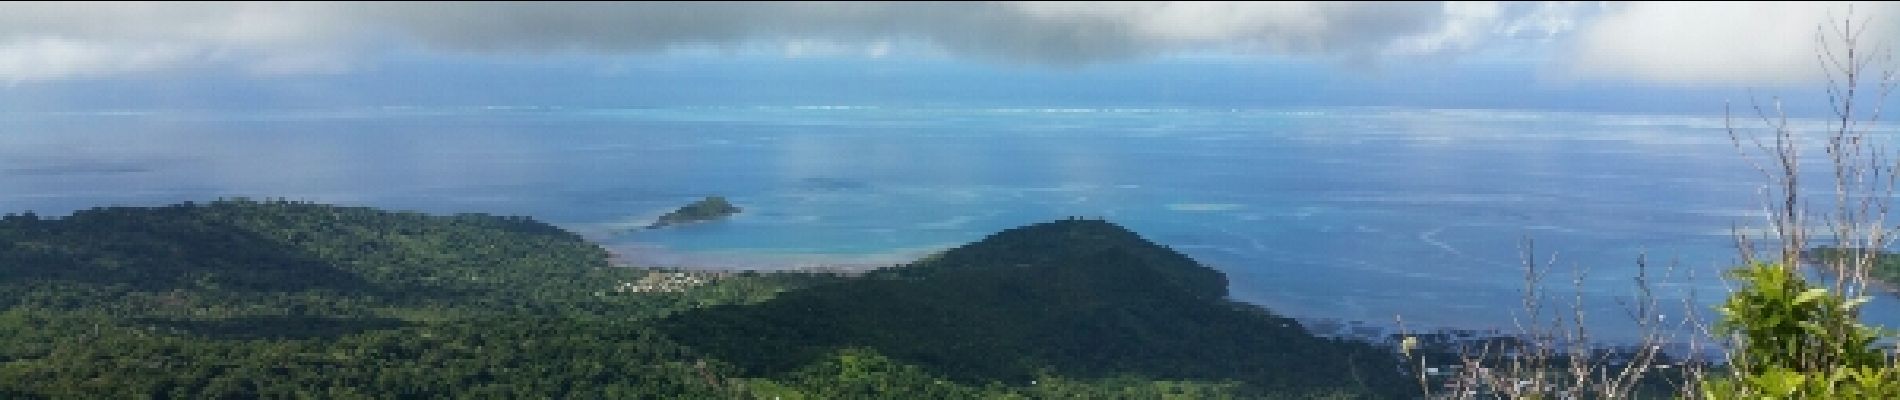 Randonnée Marche Kani-Kéli - Mayotte - 5 ème jour - descente du Mont Mlima Choungui - Photo